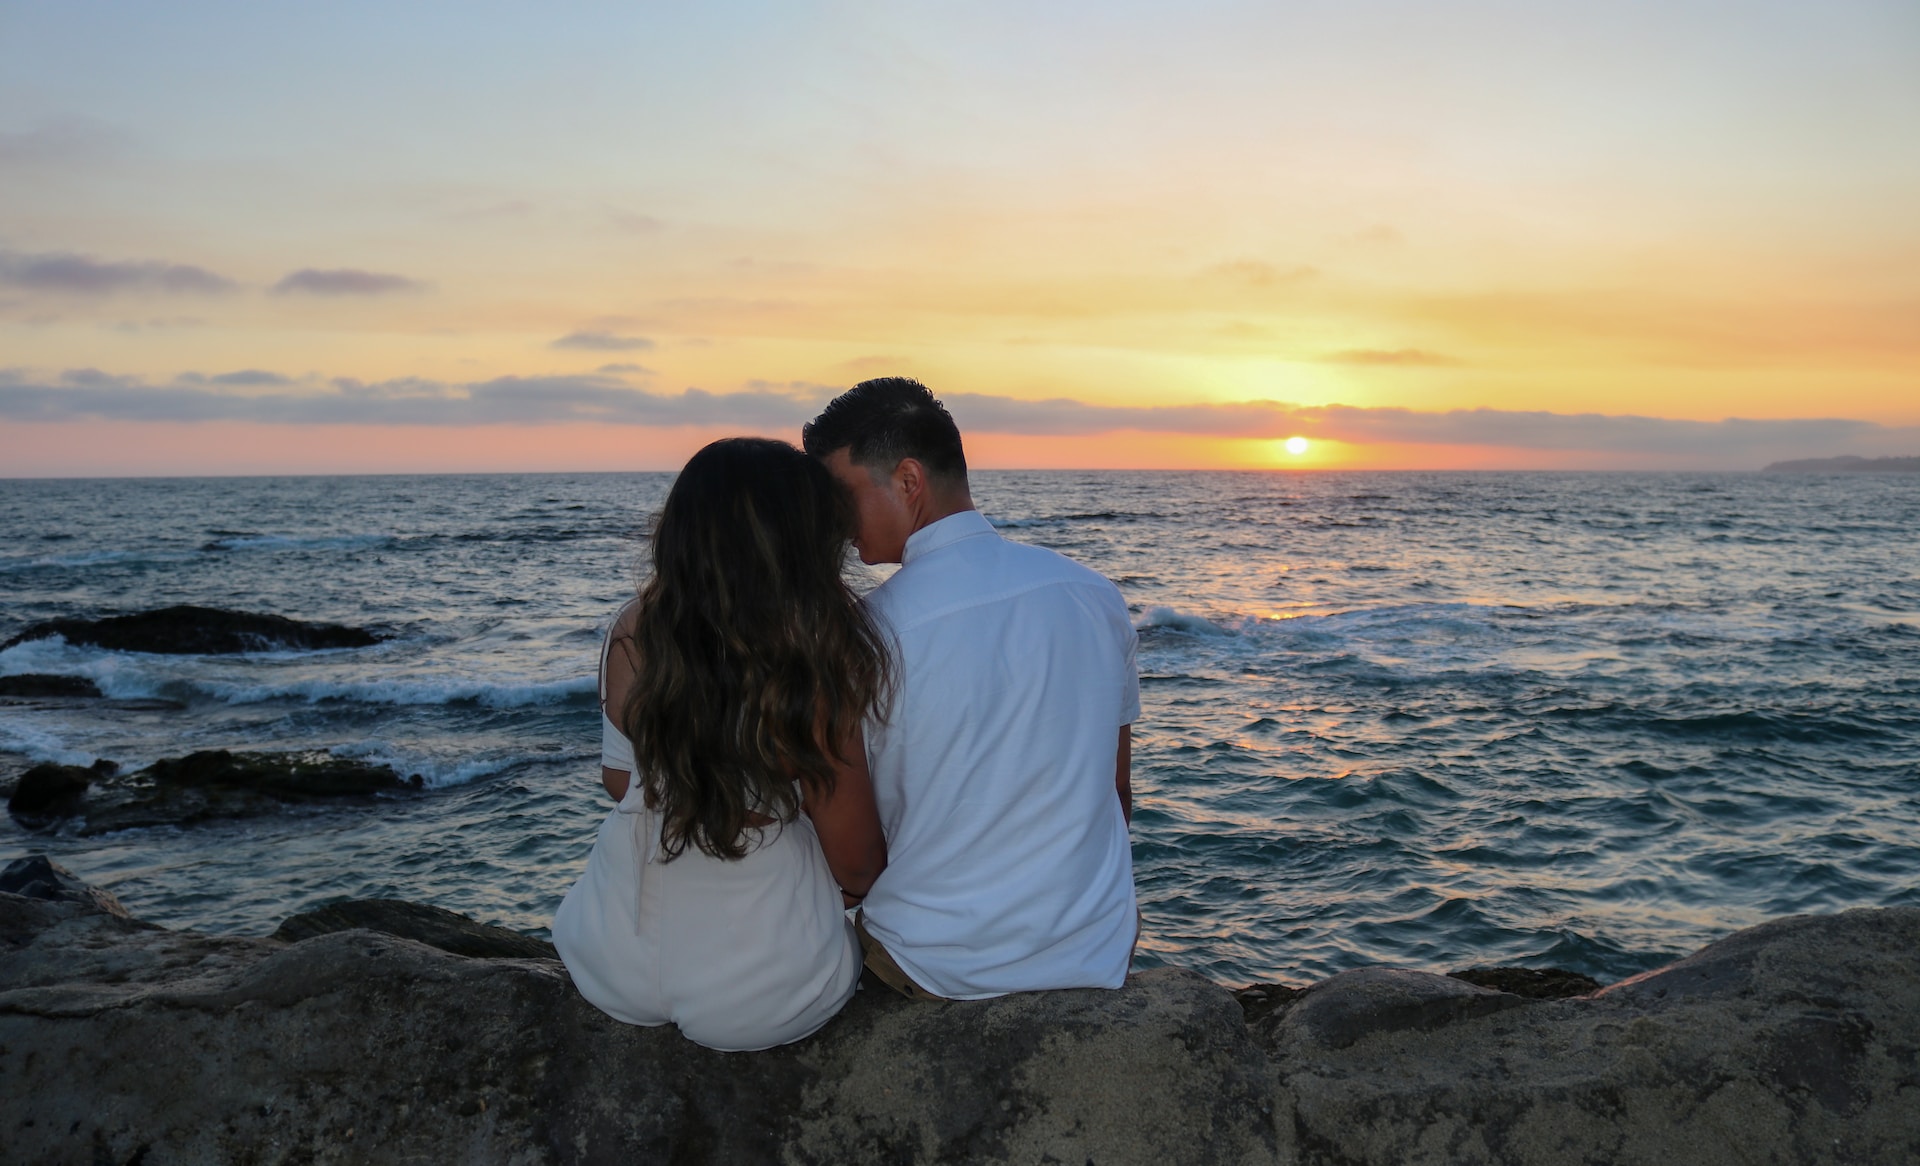 Romantic weekend in Israel